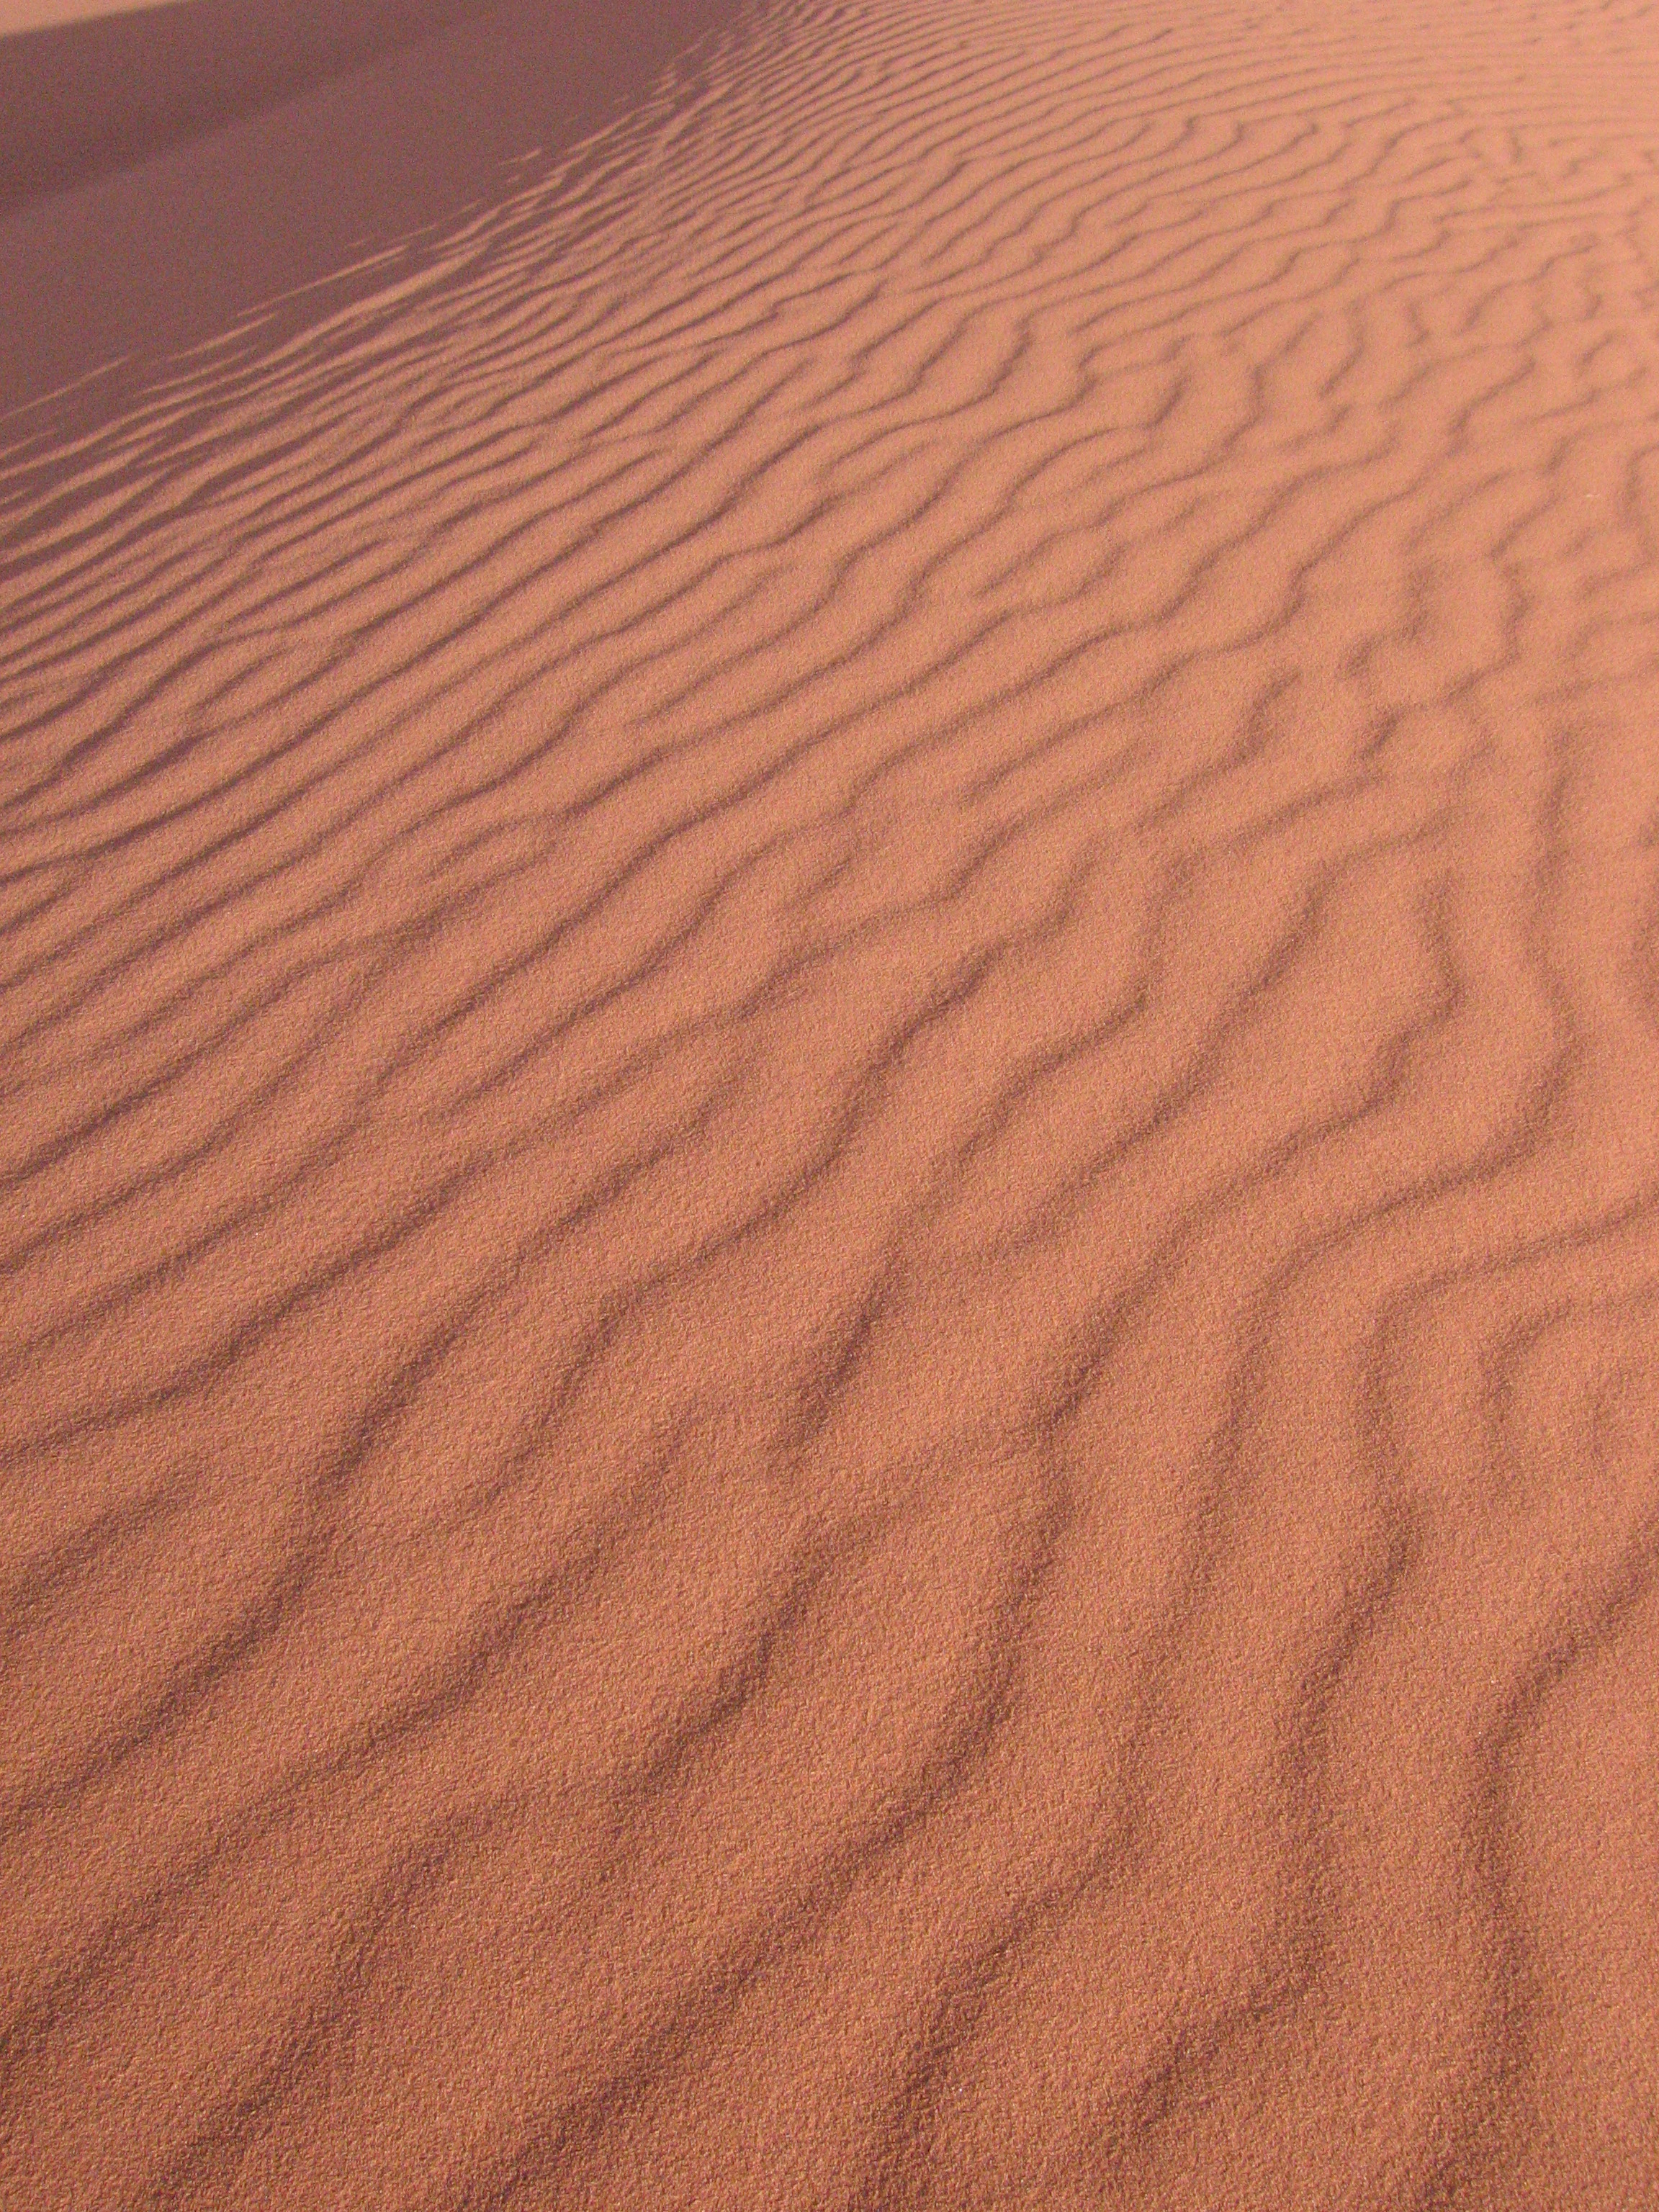 Скачать картинку Песок, Волны, Пустыня, Природа, Поверхность в телефон бесплатно.